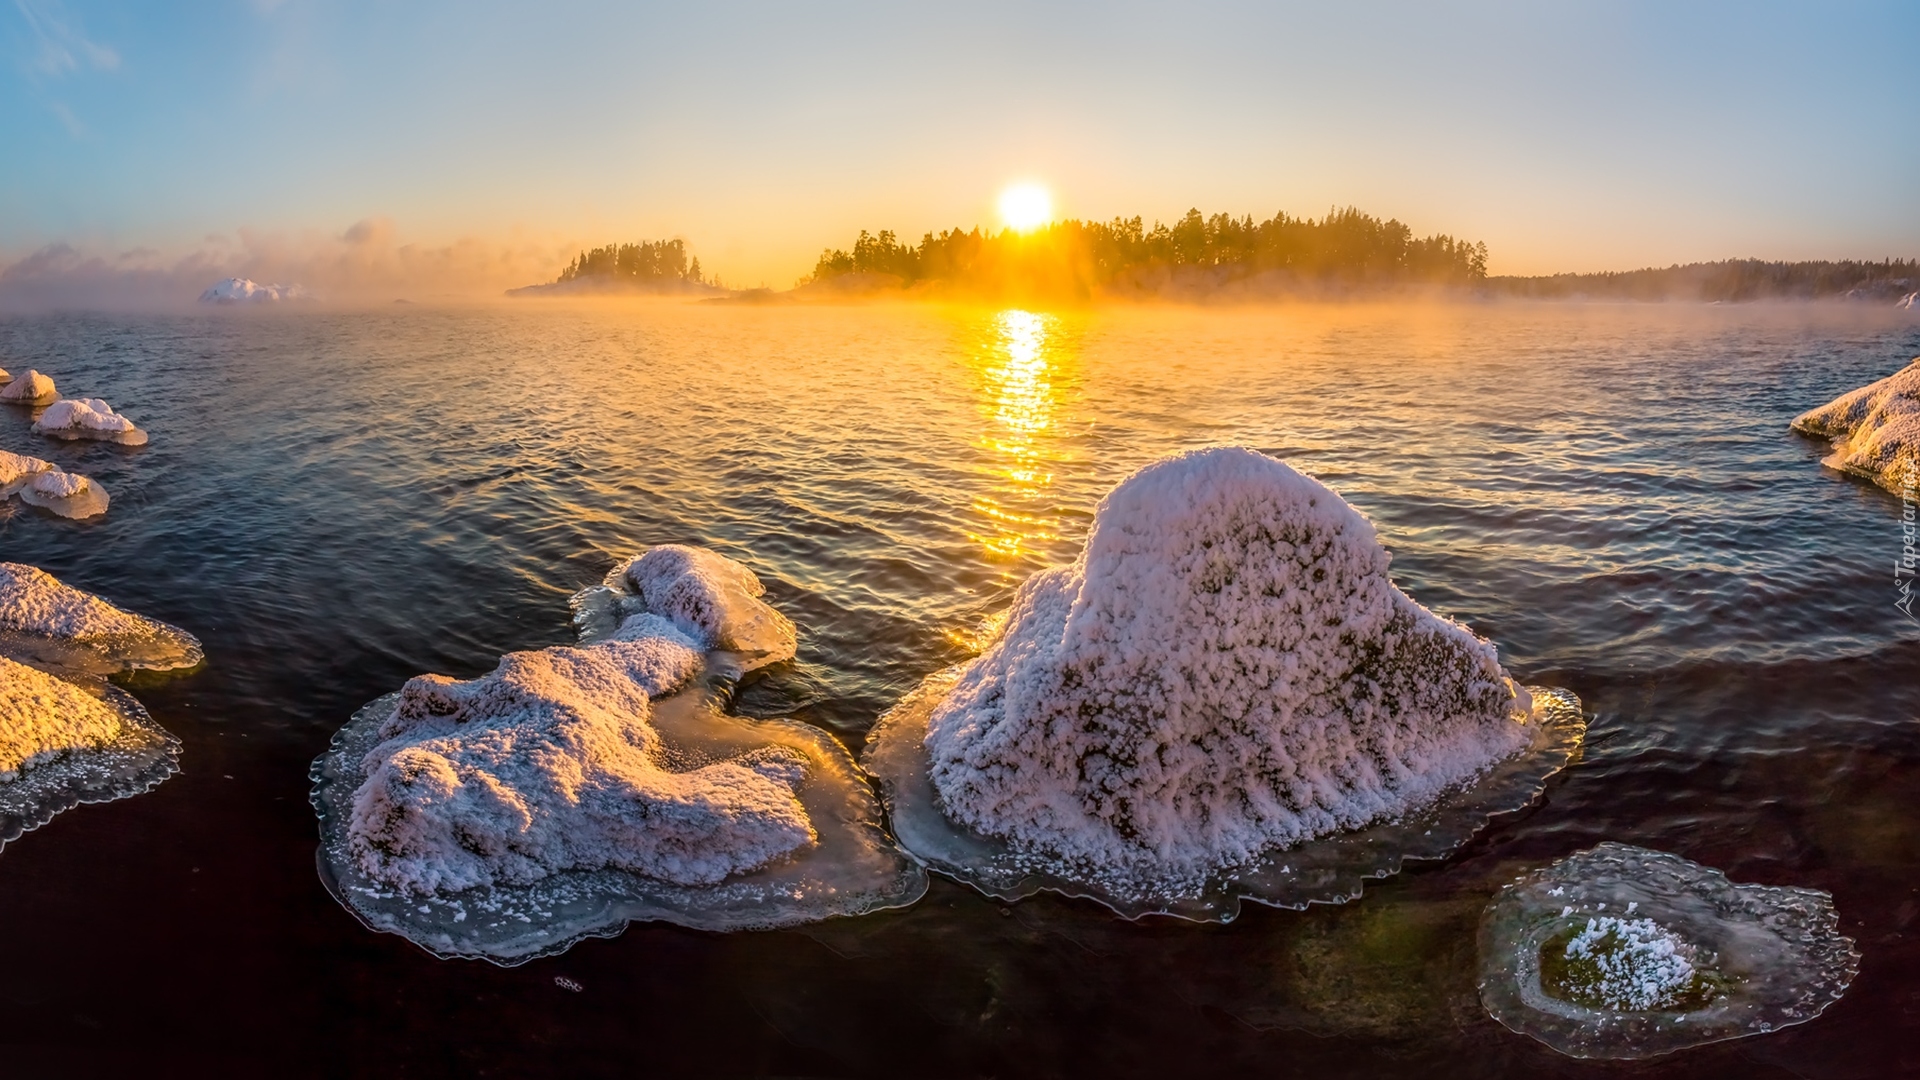 Jezioro Ładoga, Drzewa, Lód, Wschód słońca, Mgła, Karelia, Rosja